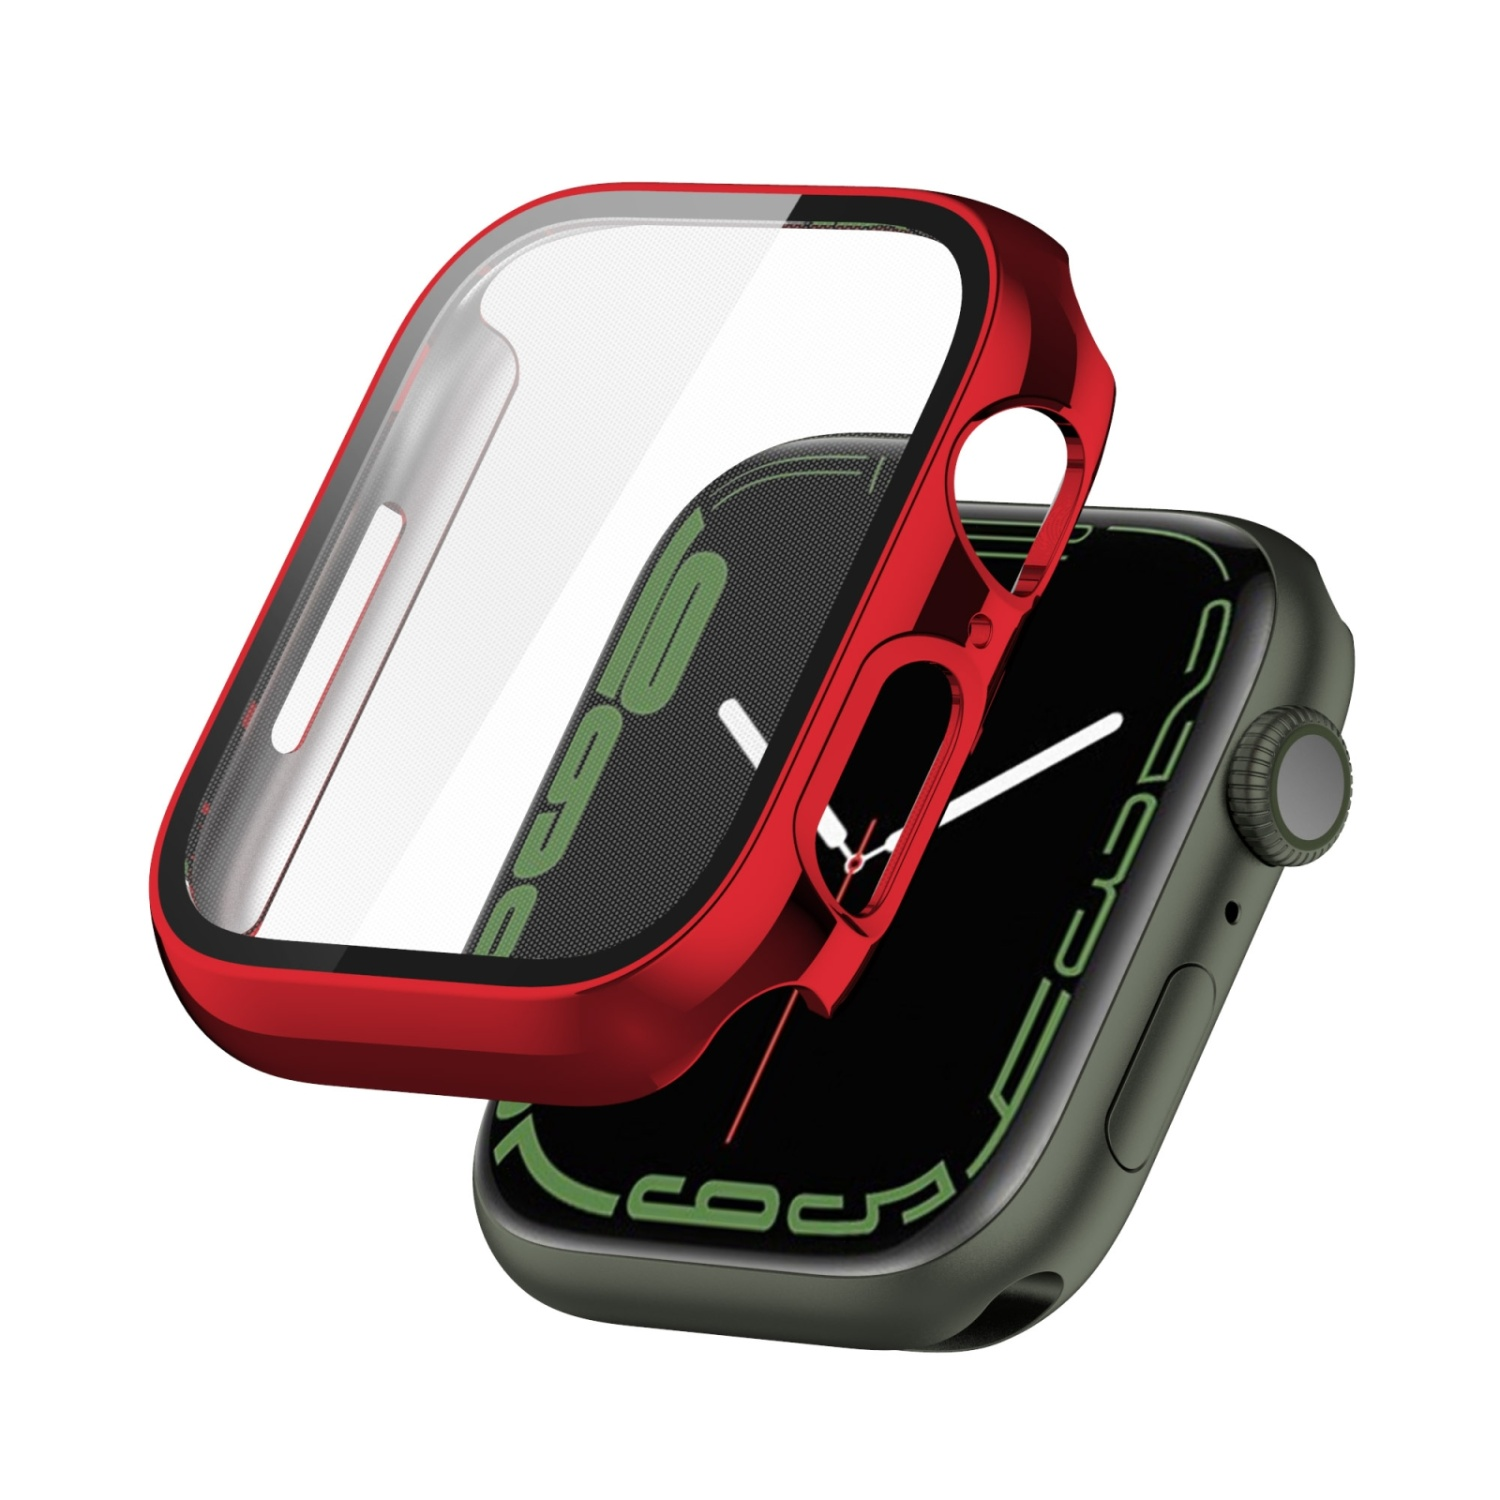 Schutzcase, Displayschutz, 41mm, DESIGN Watch KÖNIG Series Rot 7 Apple,